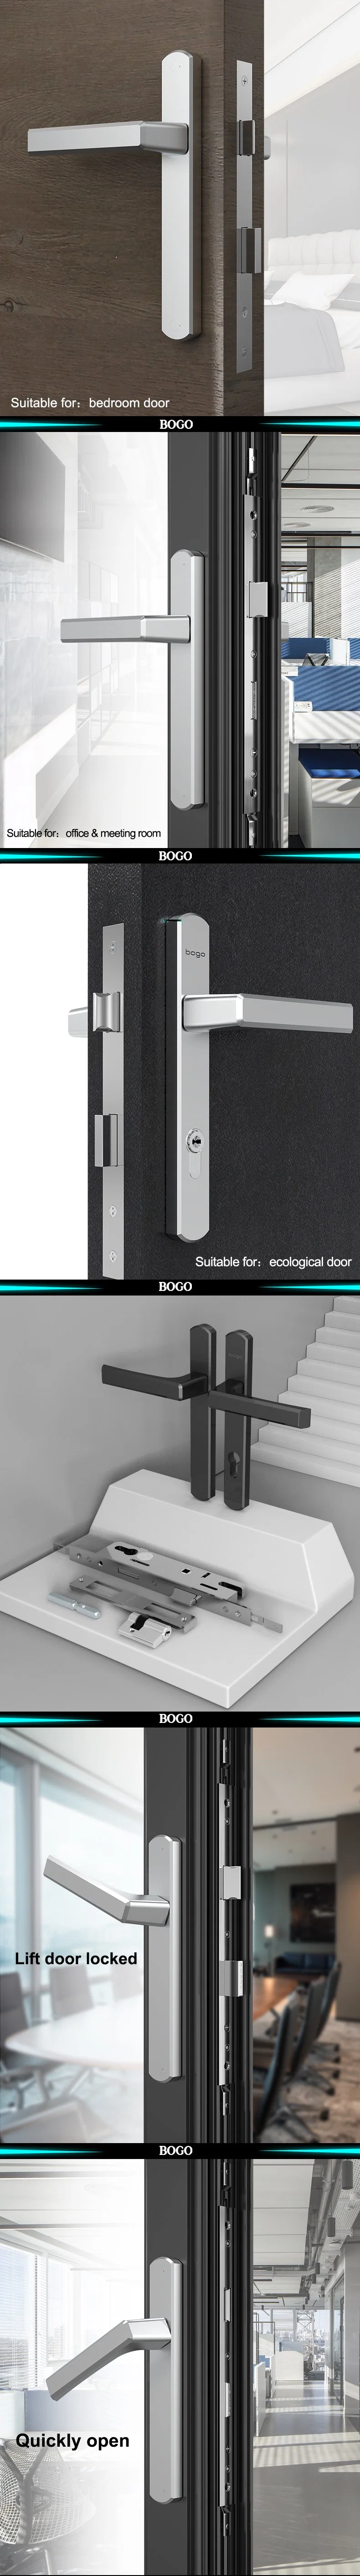 Gateman Digital Lock Best Door Locks for Home Security Exterior Door Knobs with Deadbolt